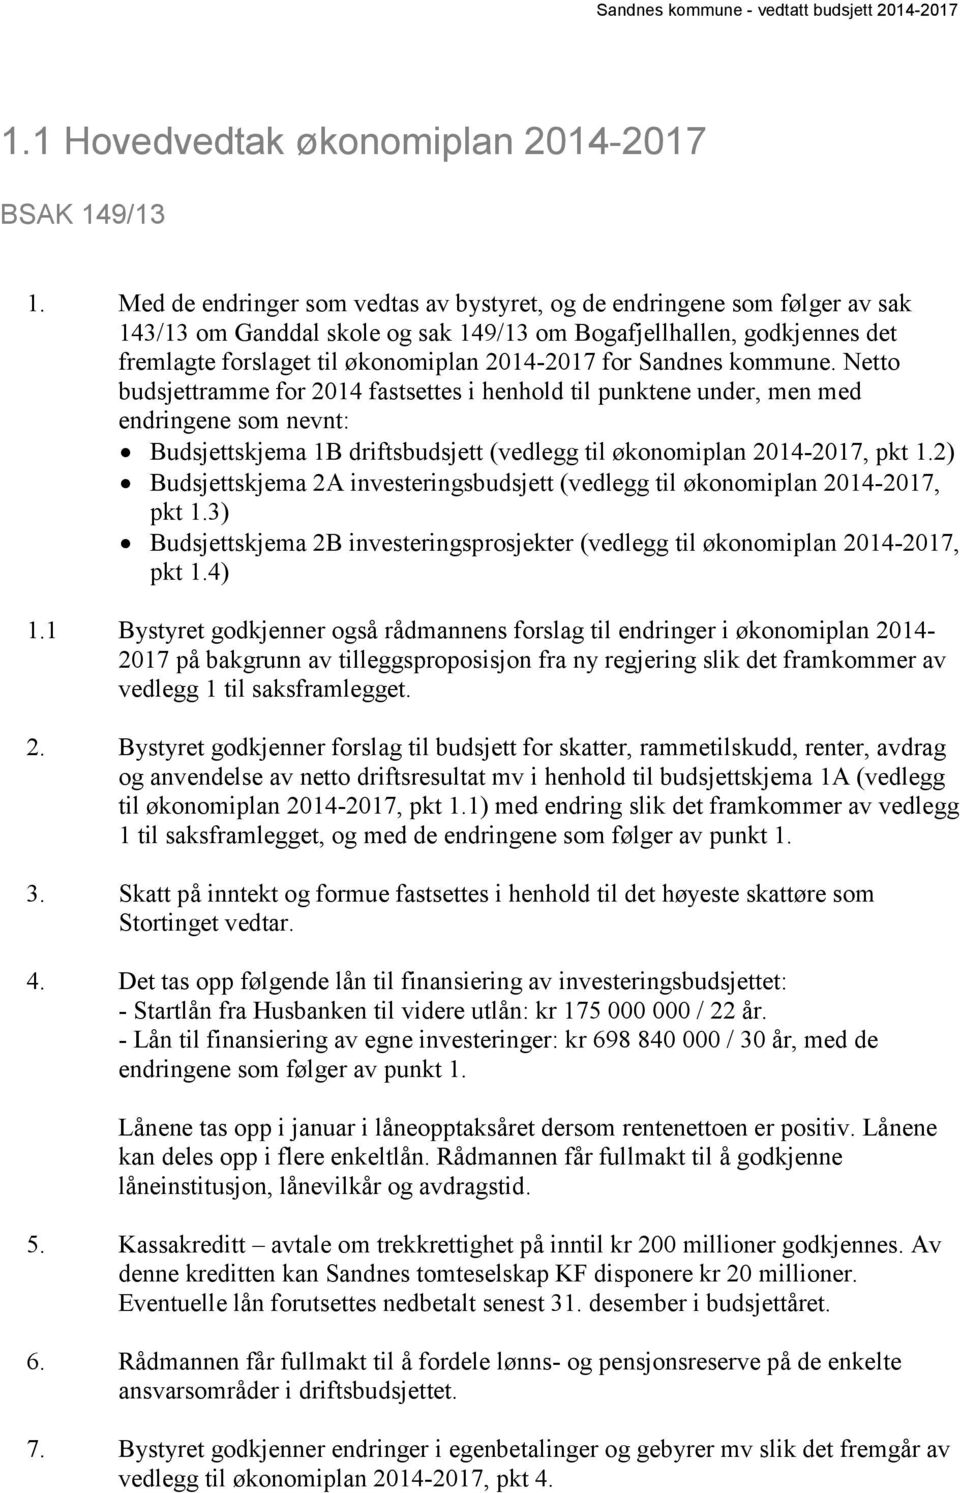 Sandnes kommune. Netto budsjettramme for 2014 fastsettes i henhold til punktene under, men med endringene som nevnt: Budsjettskjema 1B driftsbudsjett (vedlegg til økonomiplan 2014-2017, pkt 1.